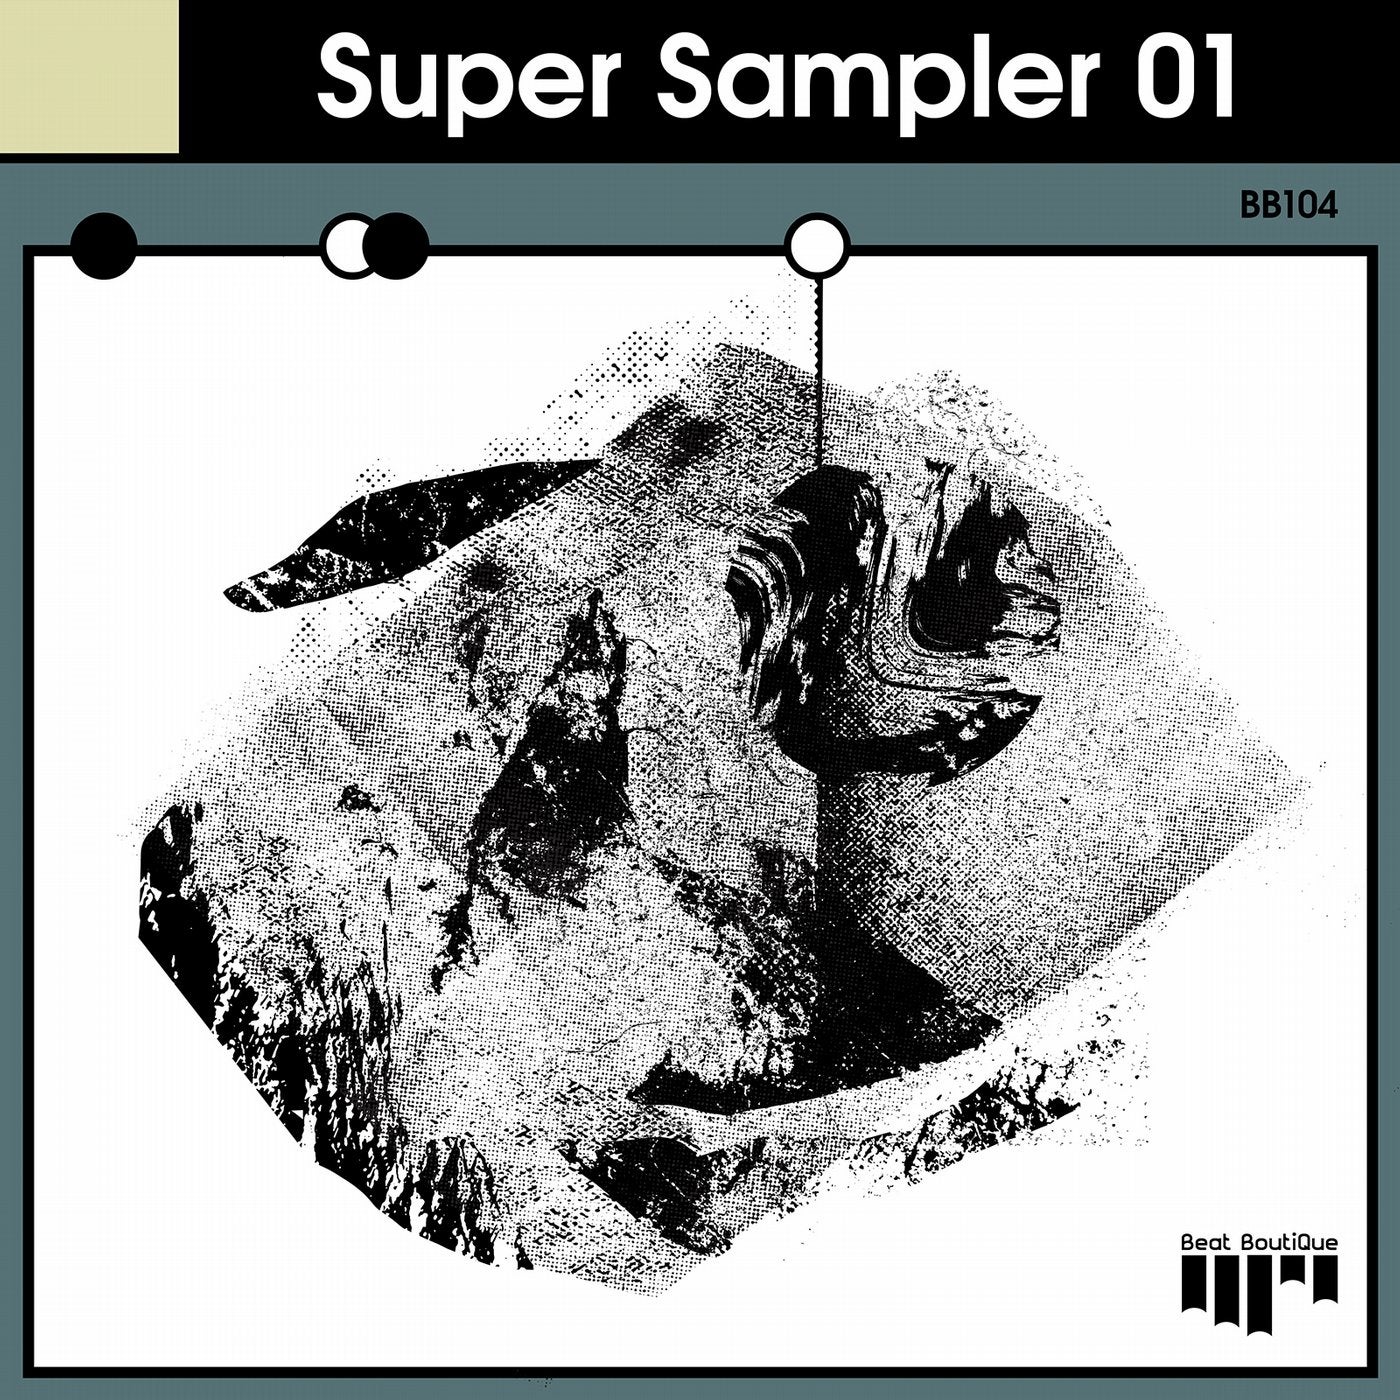 Super Sampler 01